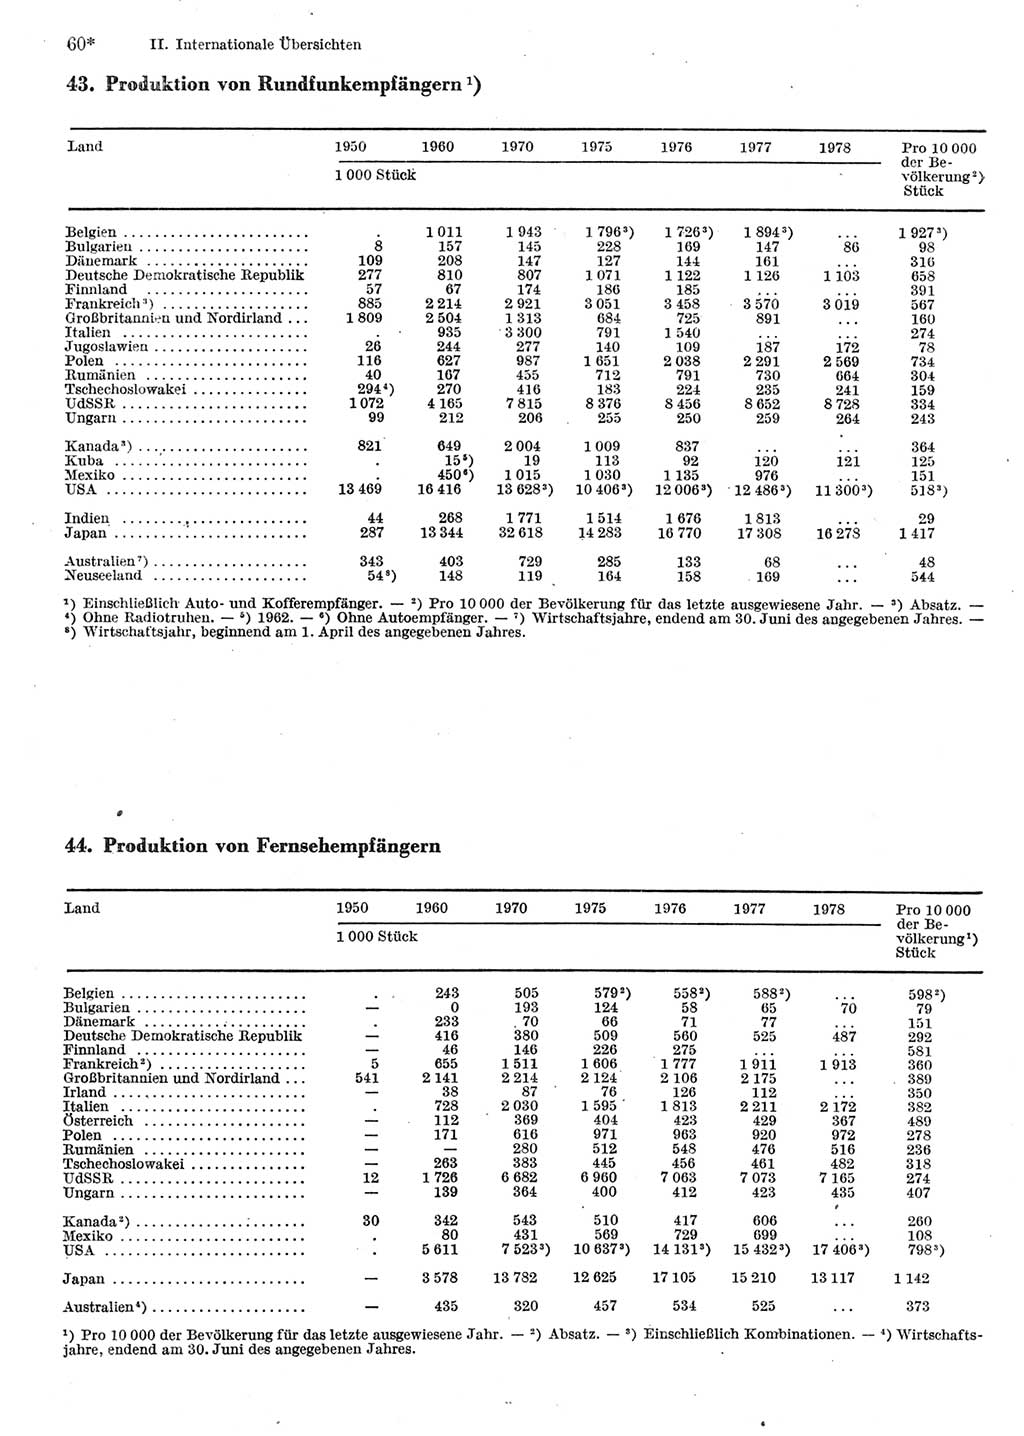 Statistisches Jahrbuch der Deutschen Demokratischen Republik (DDR) 1980, Seite 60 (Stat. Jb. DDR 1980, S. 60)